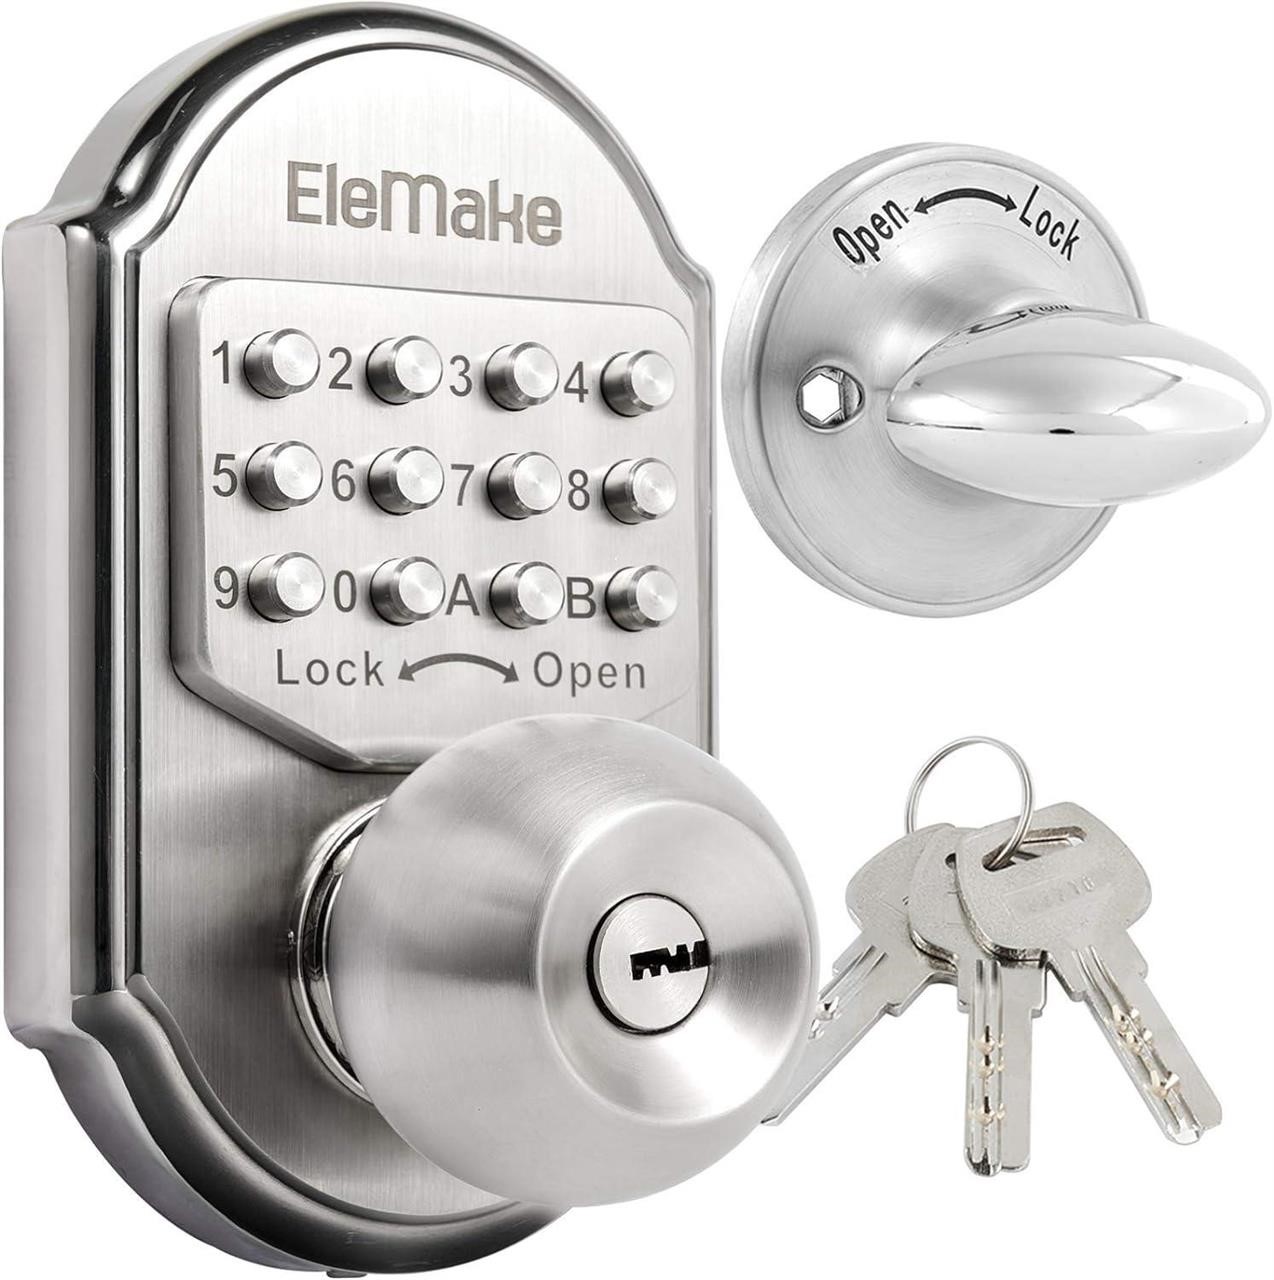 USED-Keyless Entry Keypad Deadbolt Door Lock